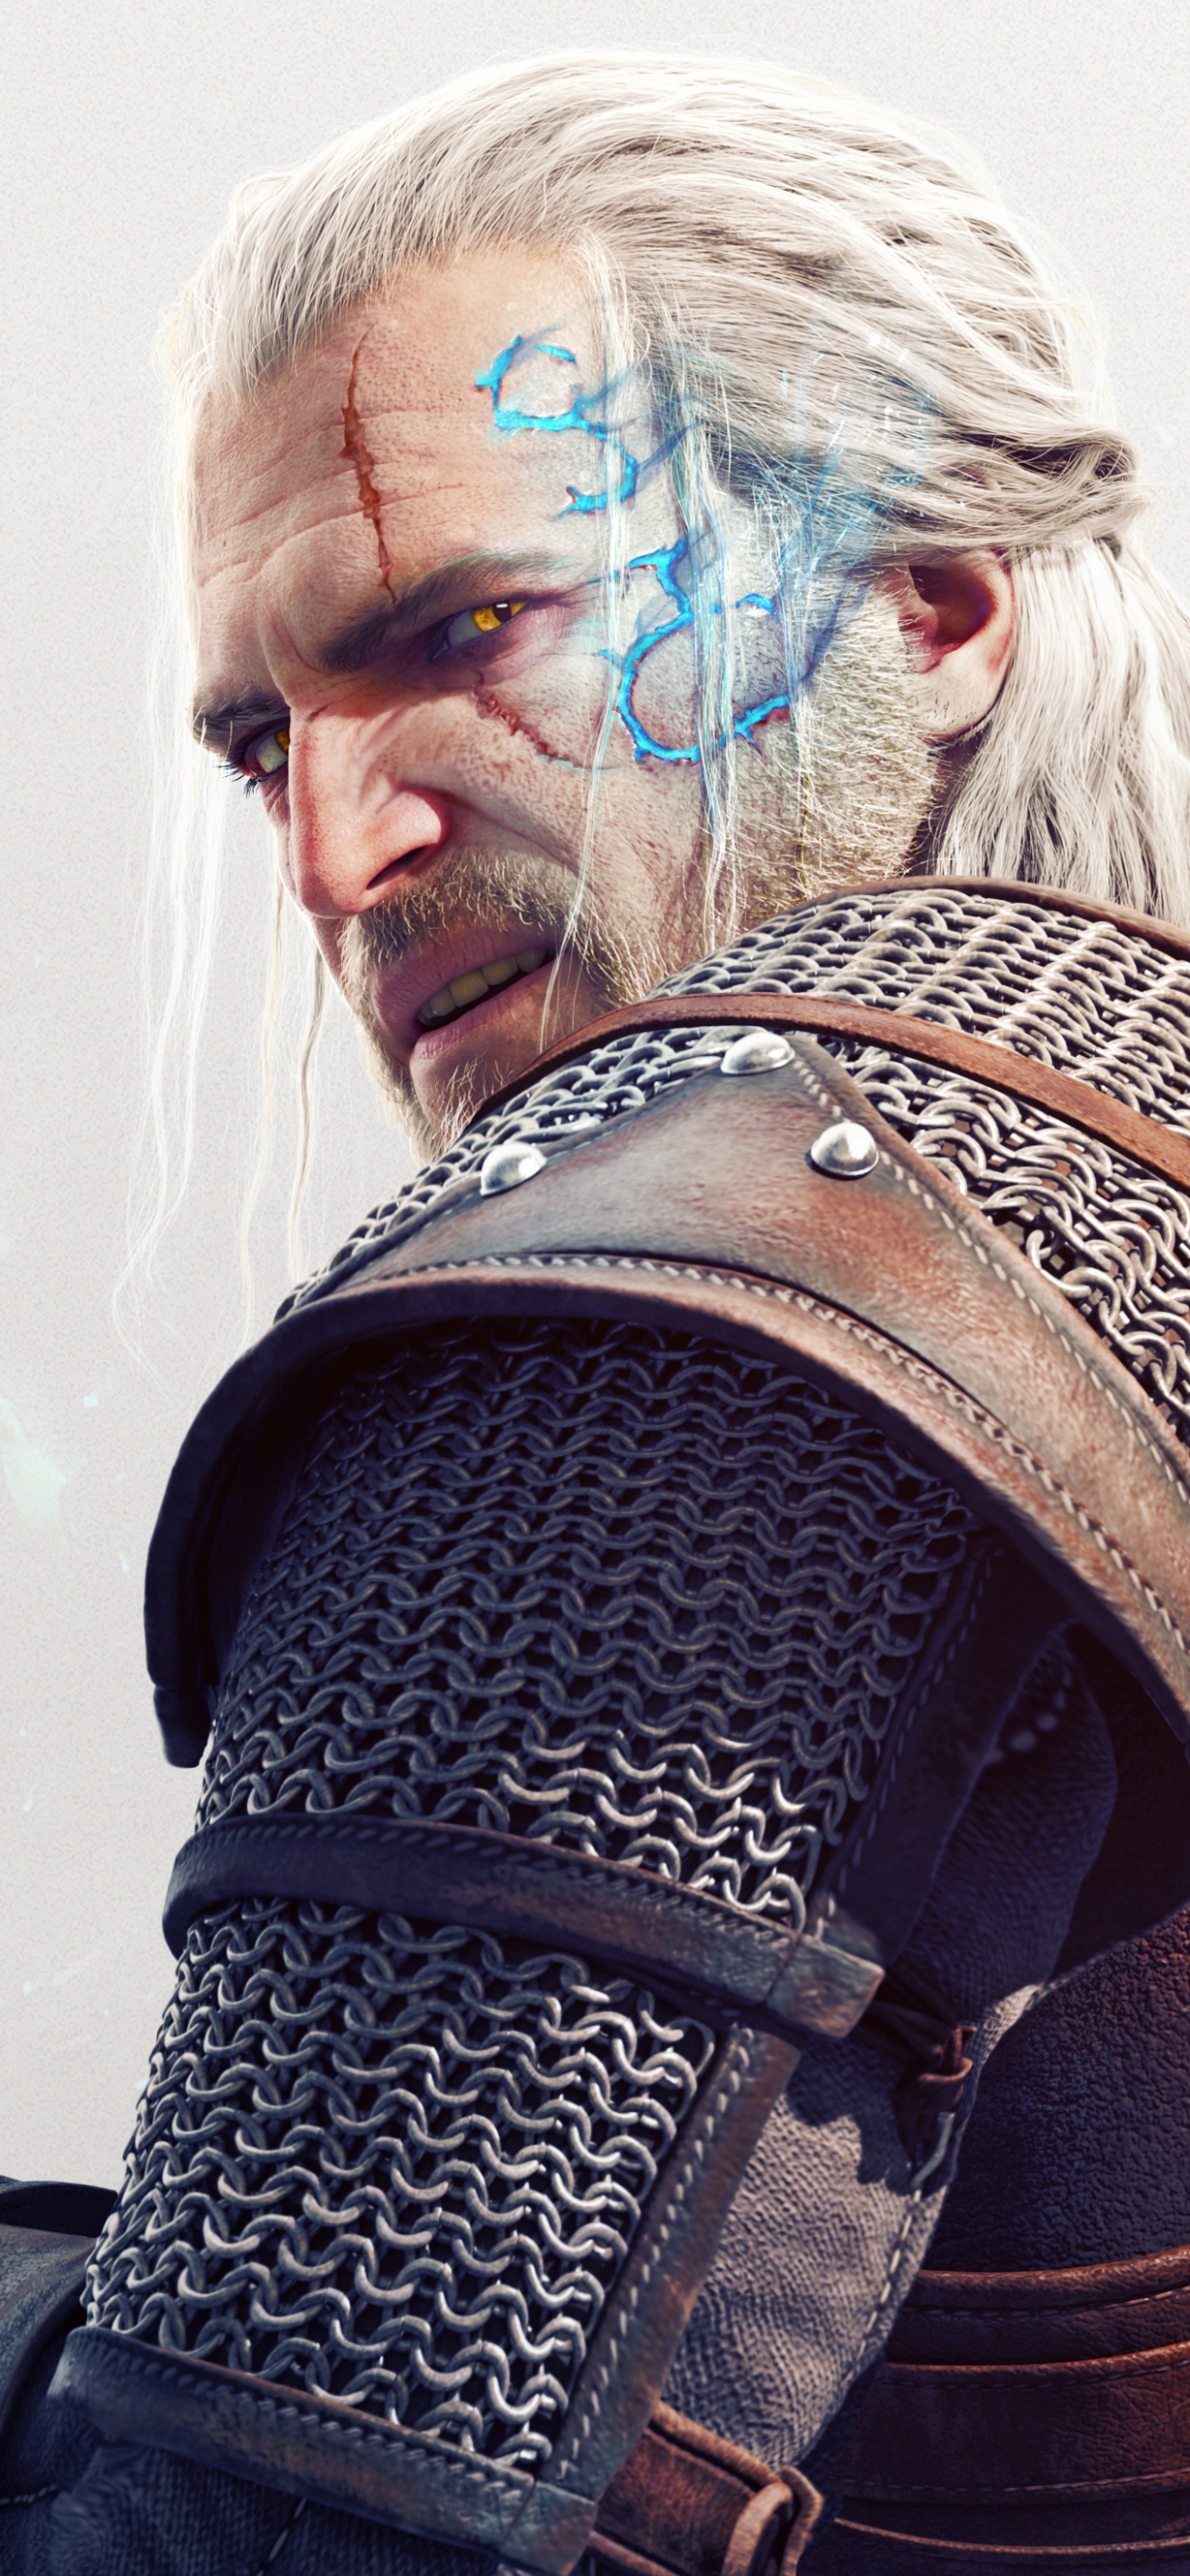 The Witcher 3 Wild Hunt, Geralt of Rivia, Beard, Facial Hair, Musician. Wallpaper in 1242x2688 Resolution